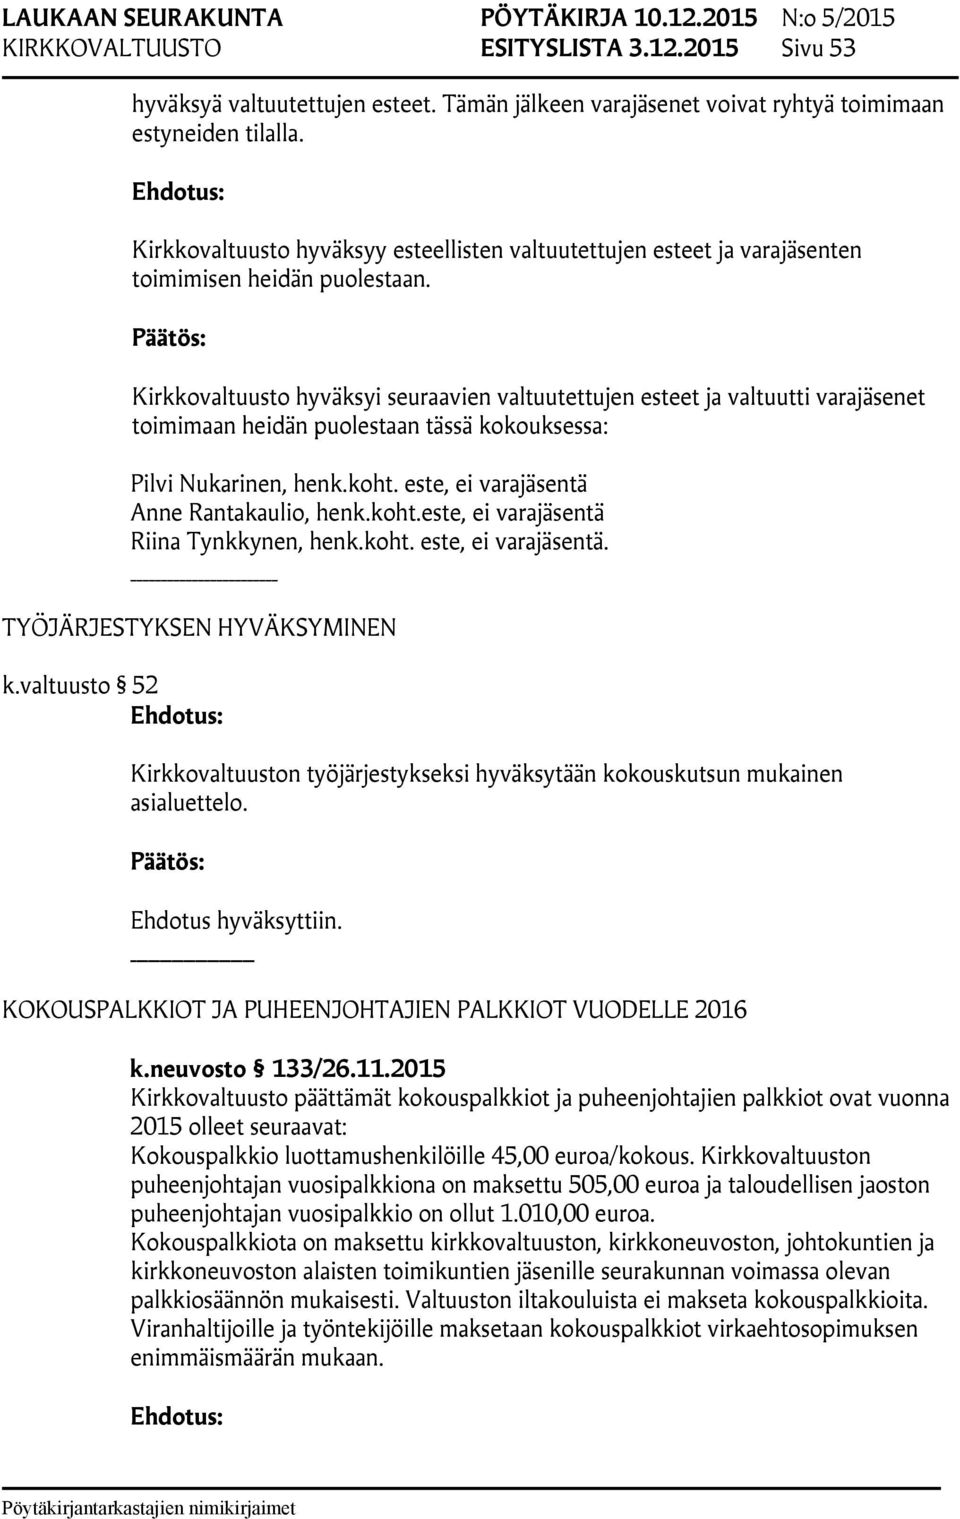 Kirkkovaltuusto hyväksyi seuraavien valtuutettujen esteet ja valtuutti varajäsenet toimimaan heidän puolestaan tässä kokouksessa: Pilvi Nukarinen, henk.koht.